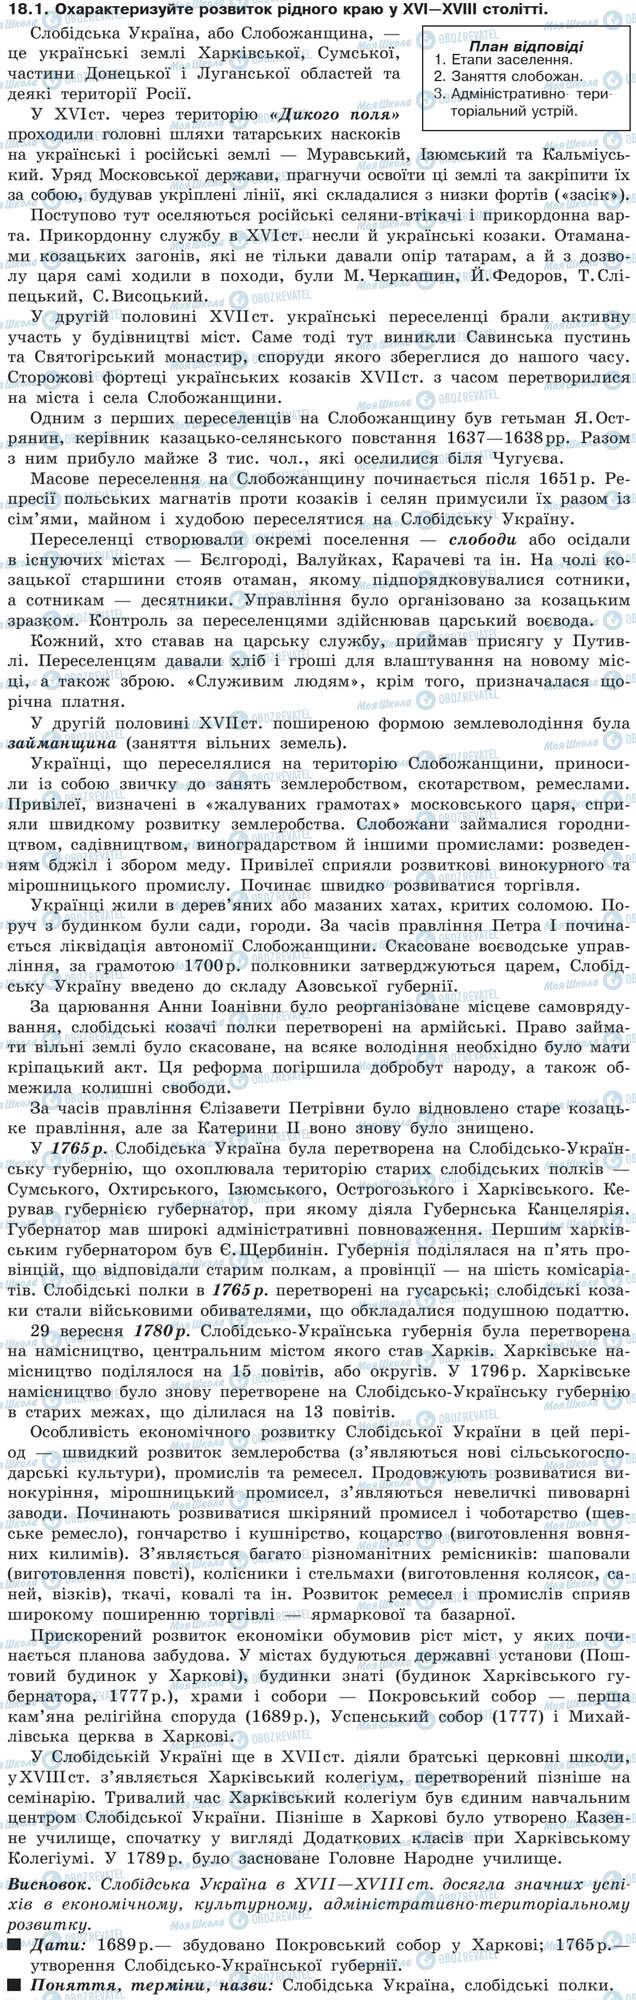 ДПА История Украины 9 класс страница 18.1